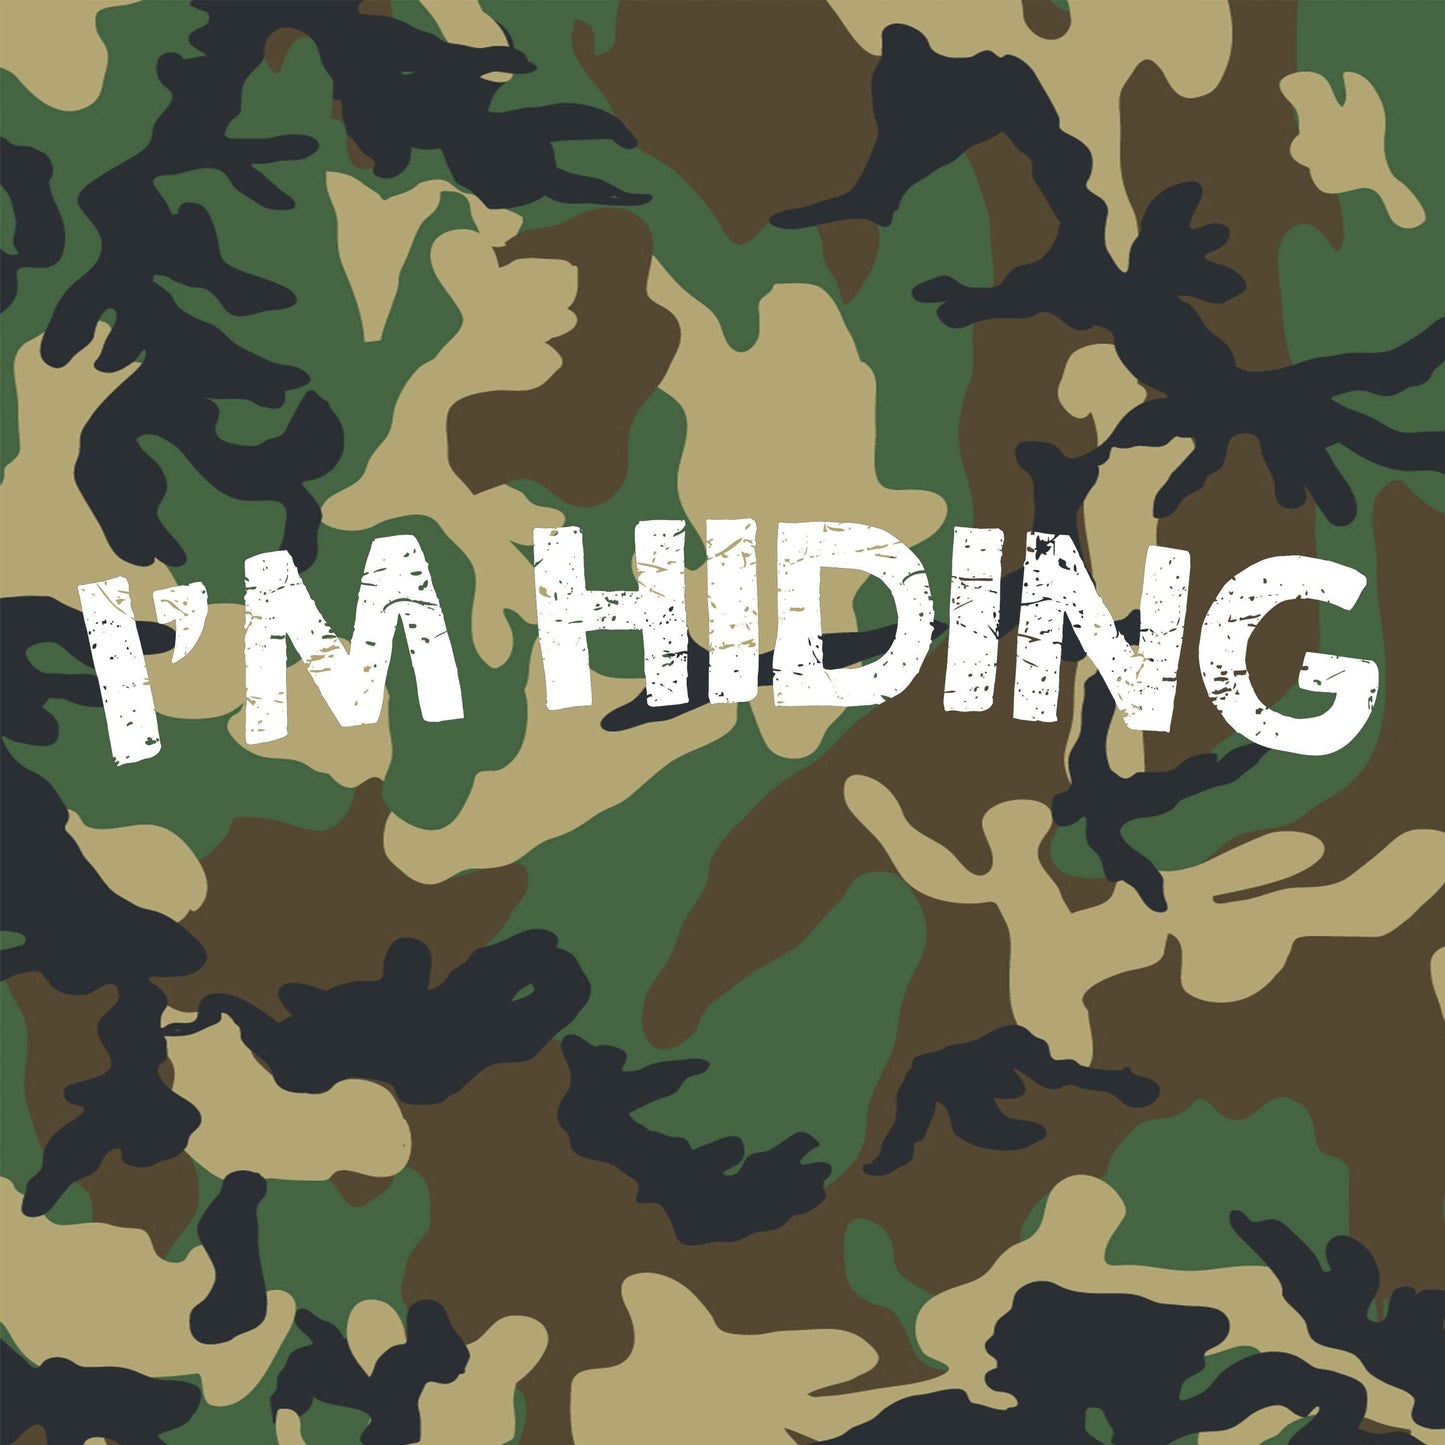 I'm Hiding Men's T Shirt – IMANISEVAN